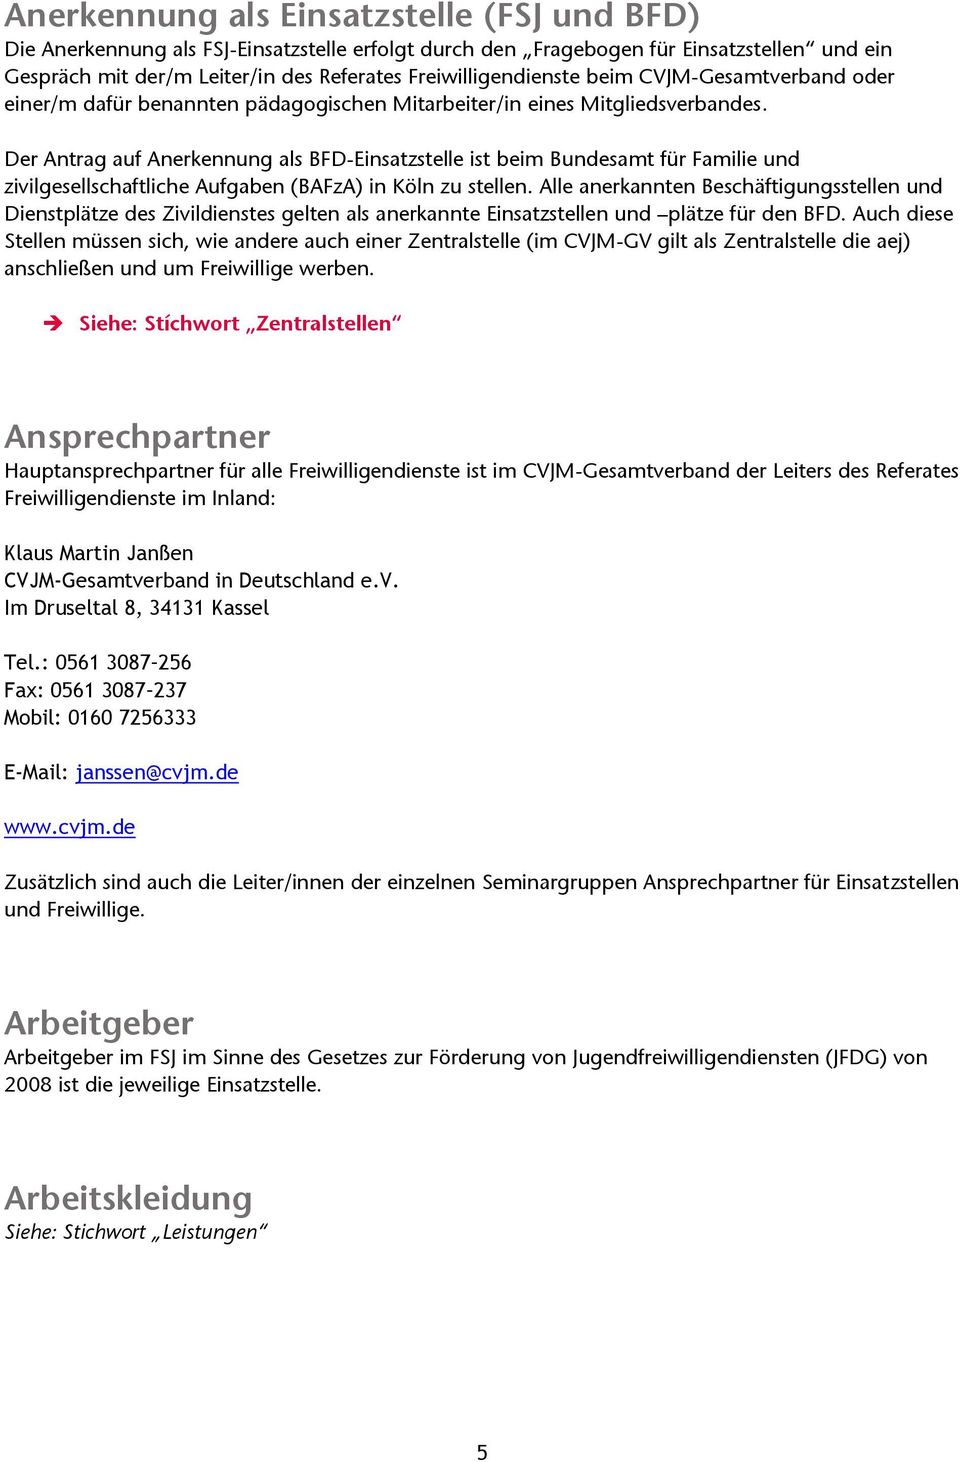 Der Antrag auf Anerkennung als BFD-Einsatzstelle ist beim Bundesamt für Familie und zivilgesellschaftliche Aufgaben (BAFzA) in Köln zu stellen.